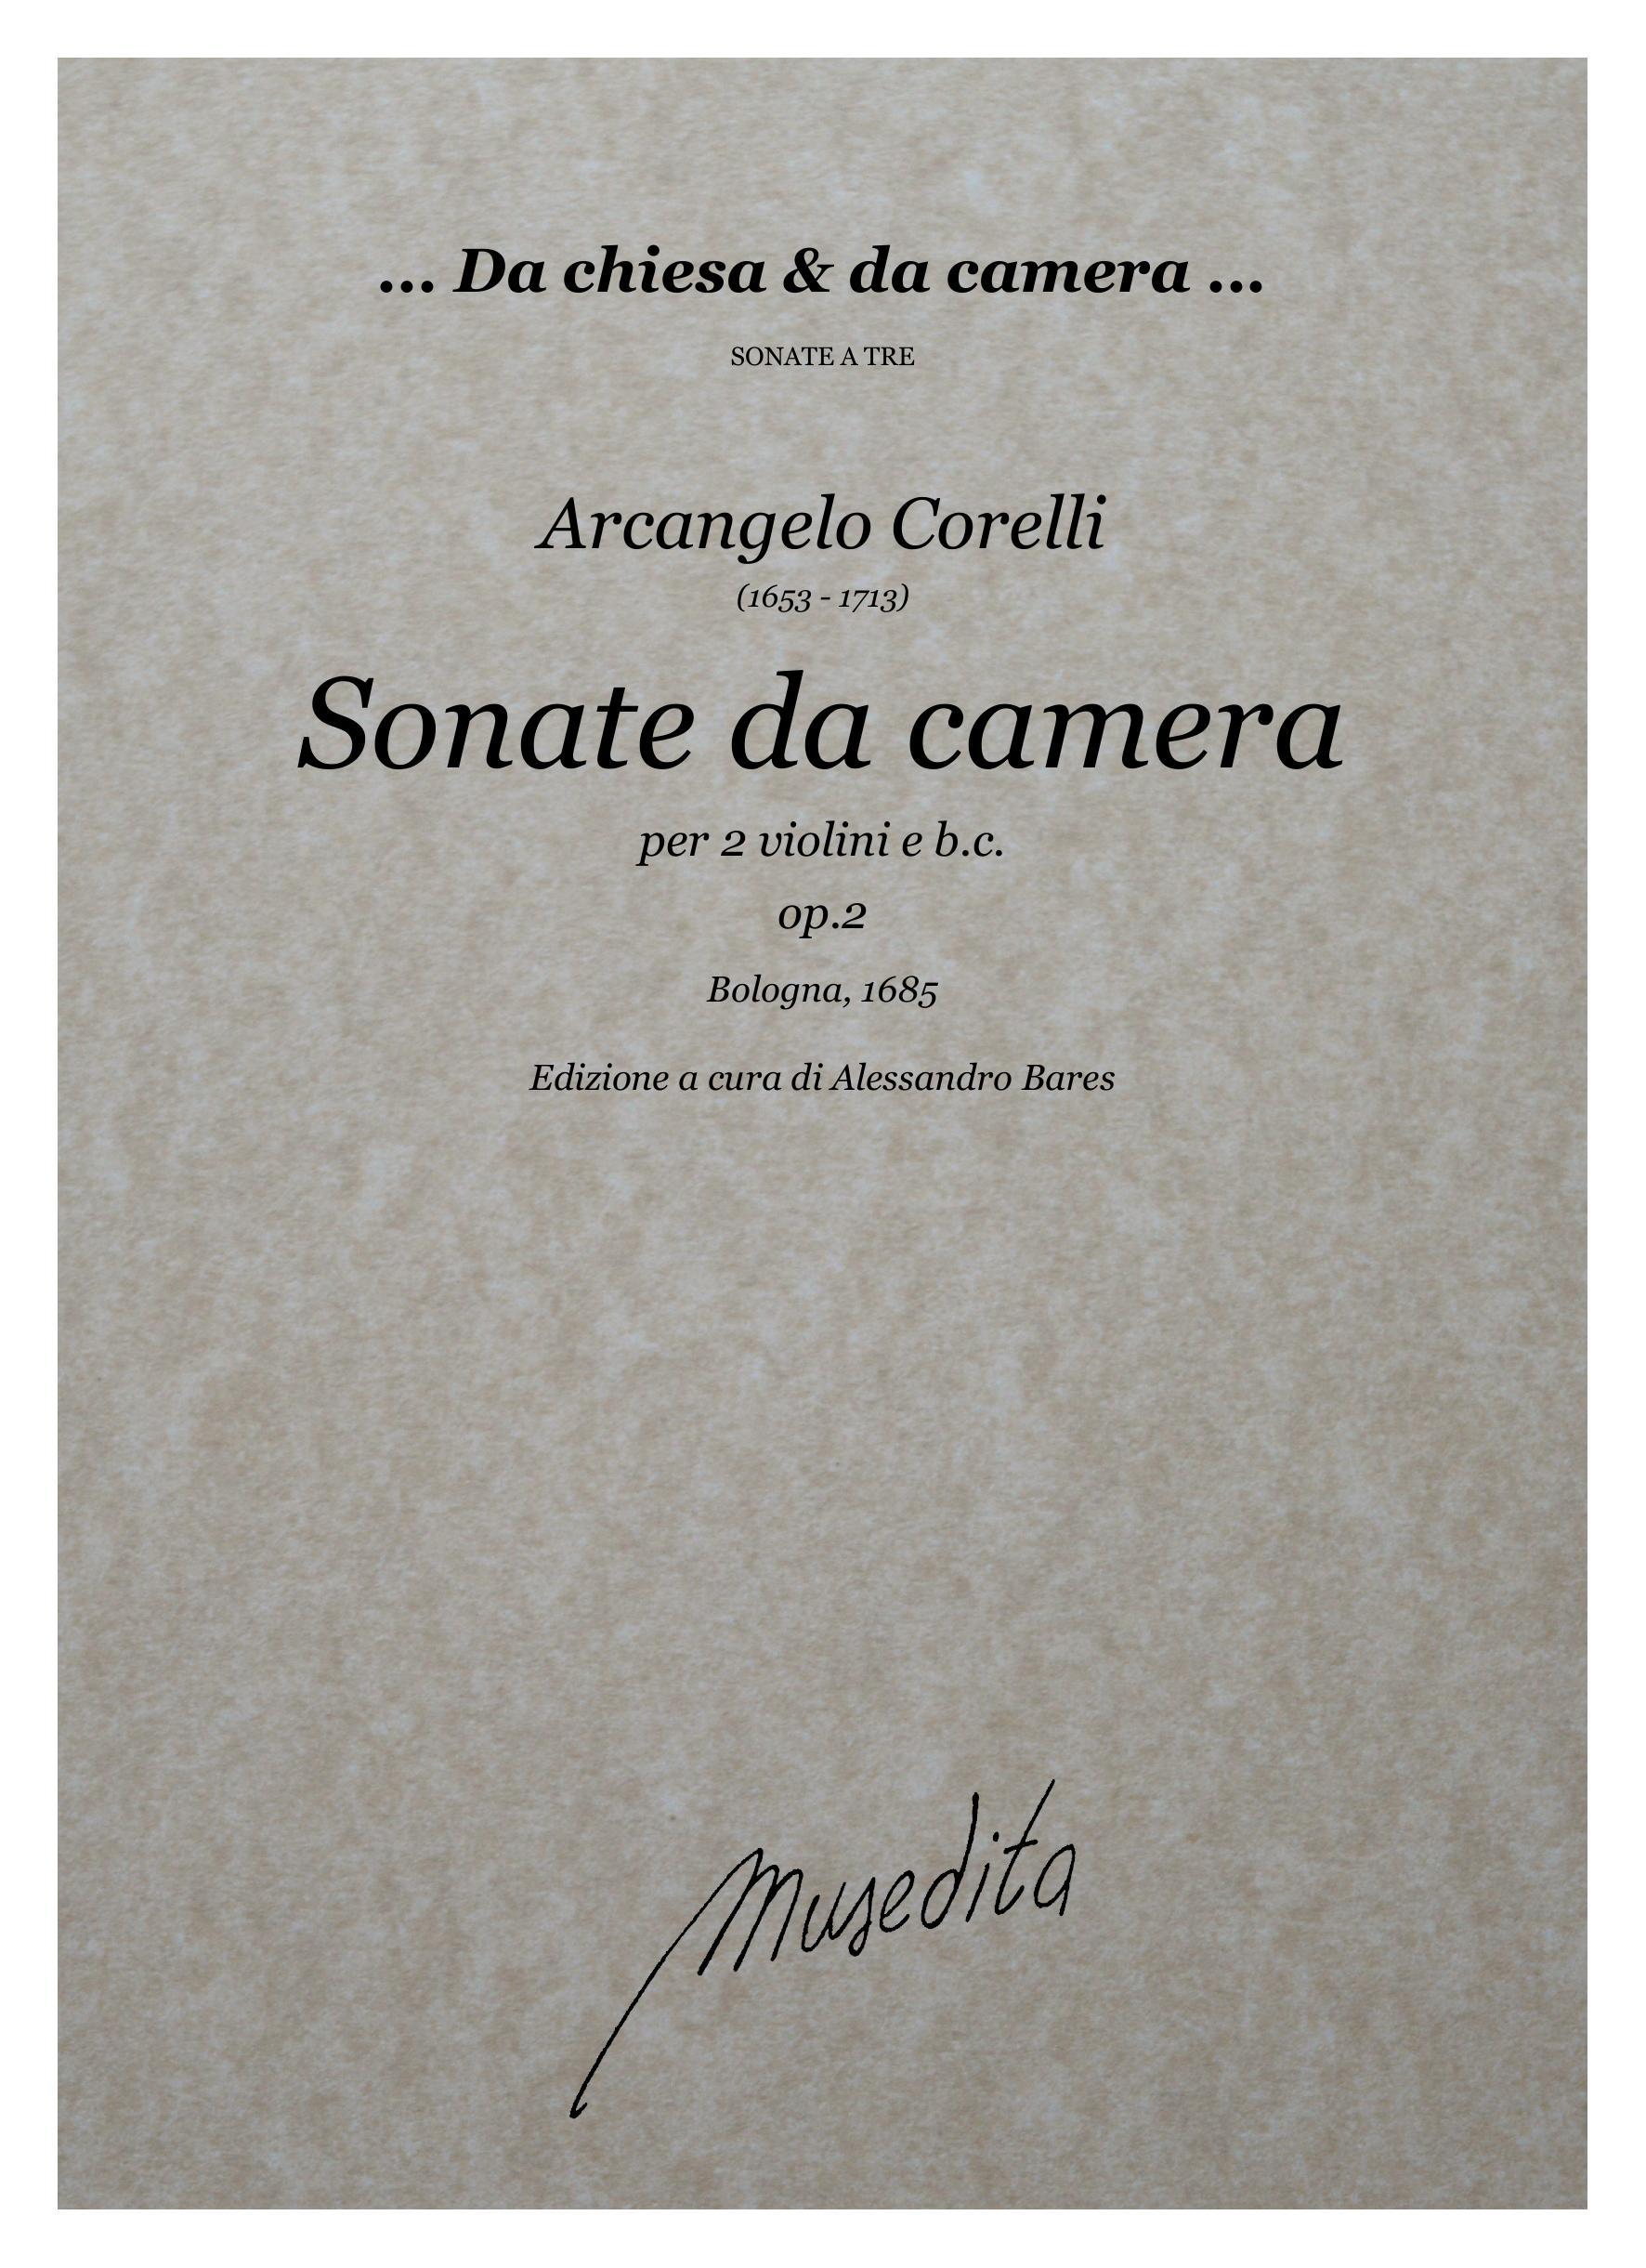 A.Corelli: Sonate da camera a tre op.2 (Bologna, 1685)